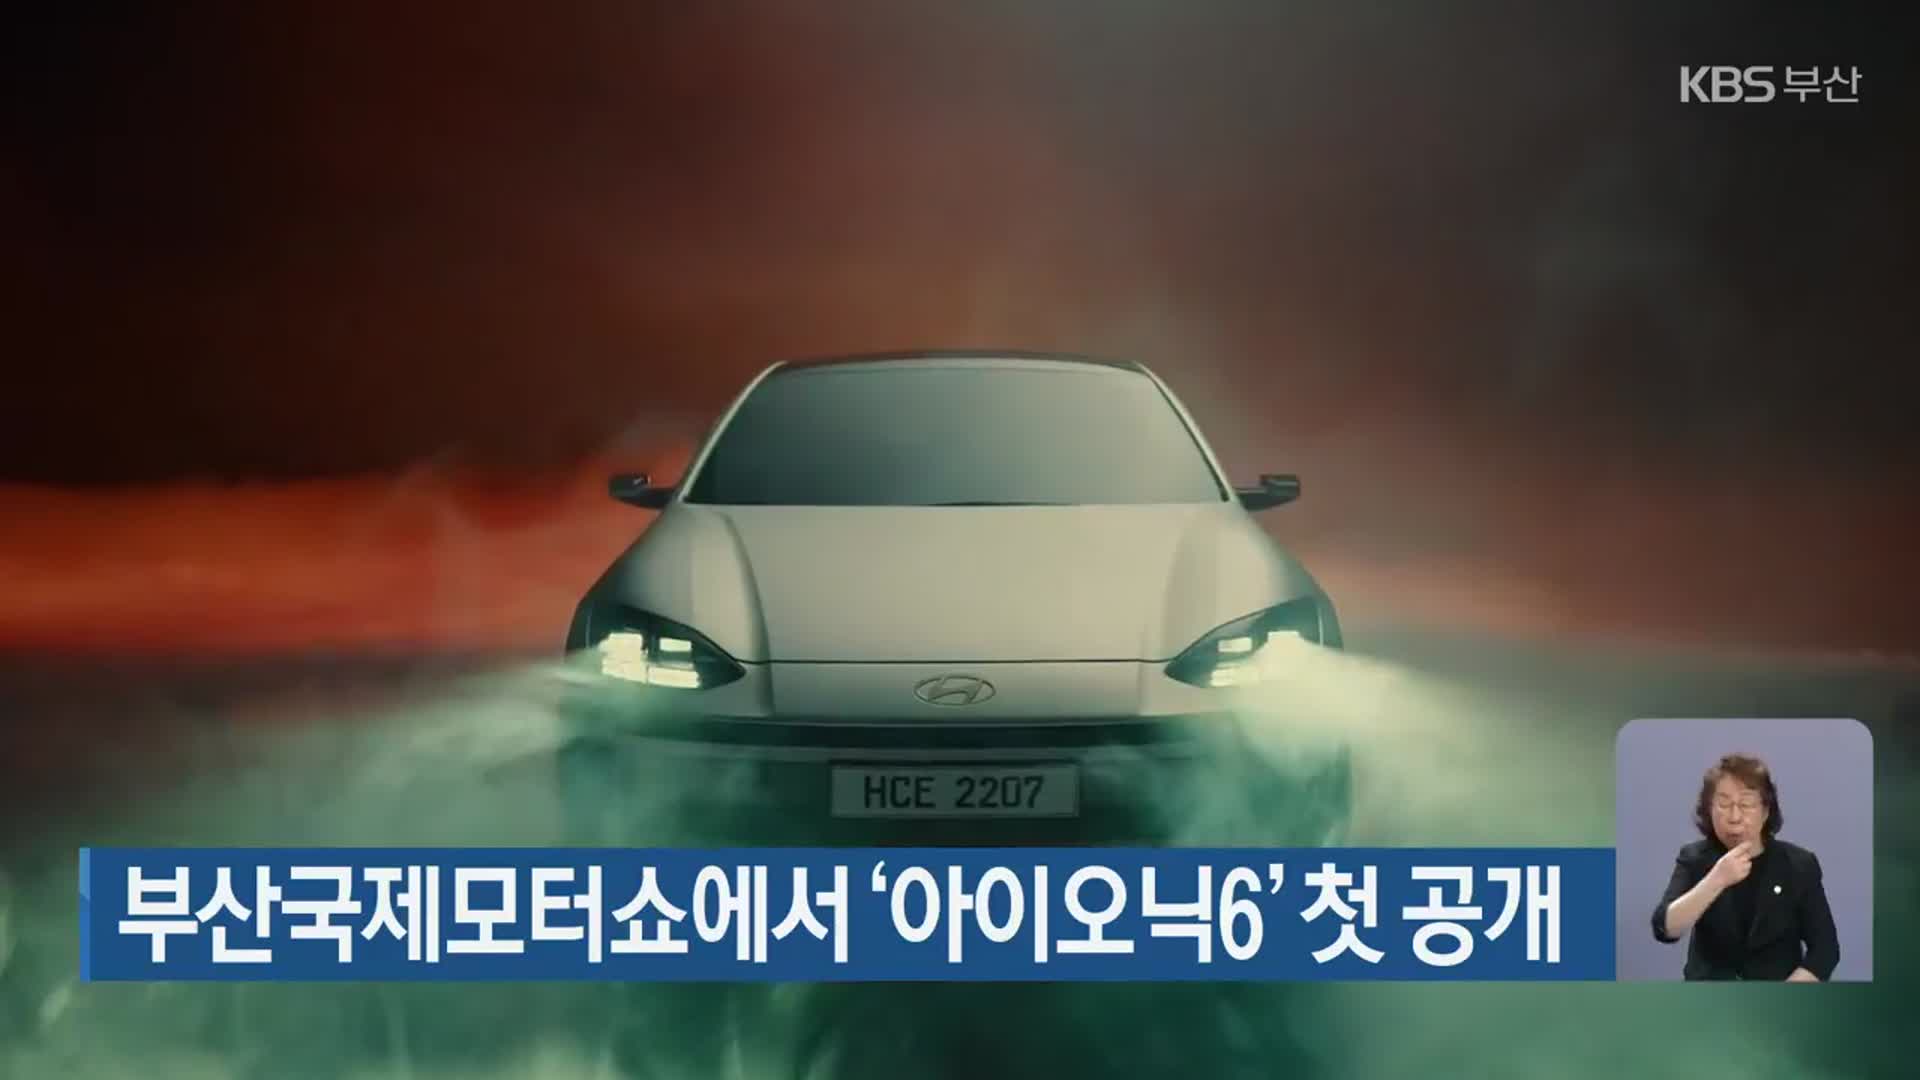 부산국제모터쇼에서 ‘아이오닉6’ 첫 공개